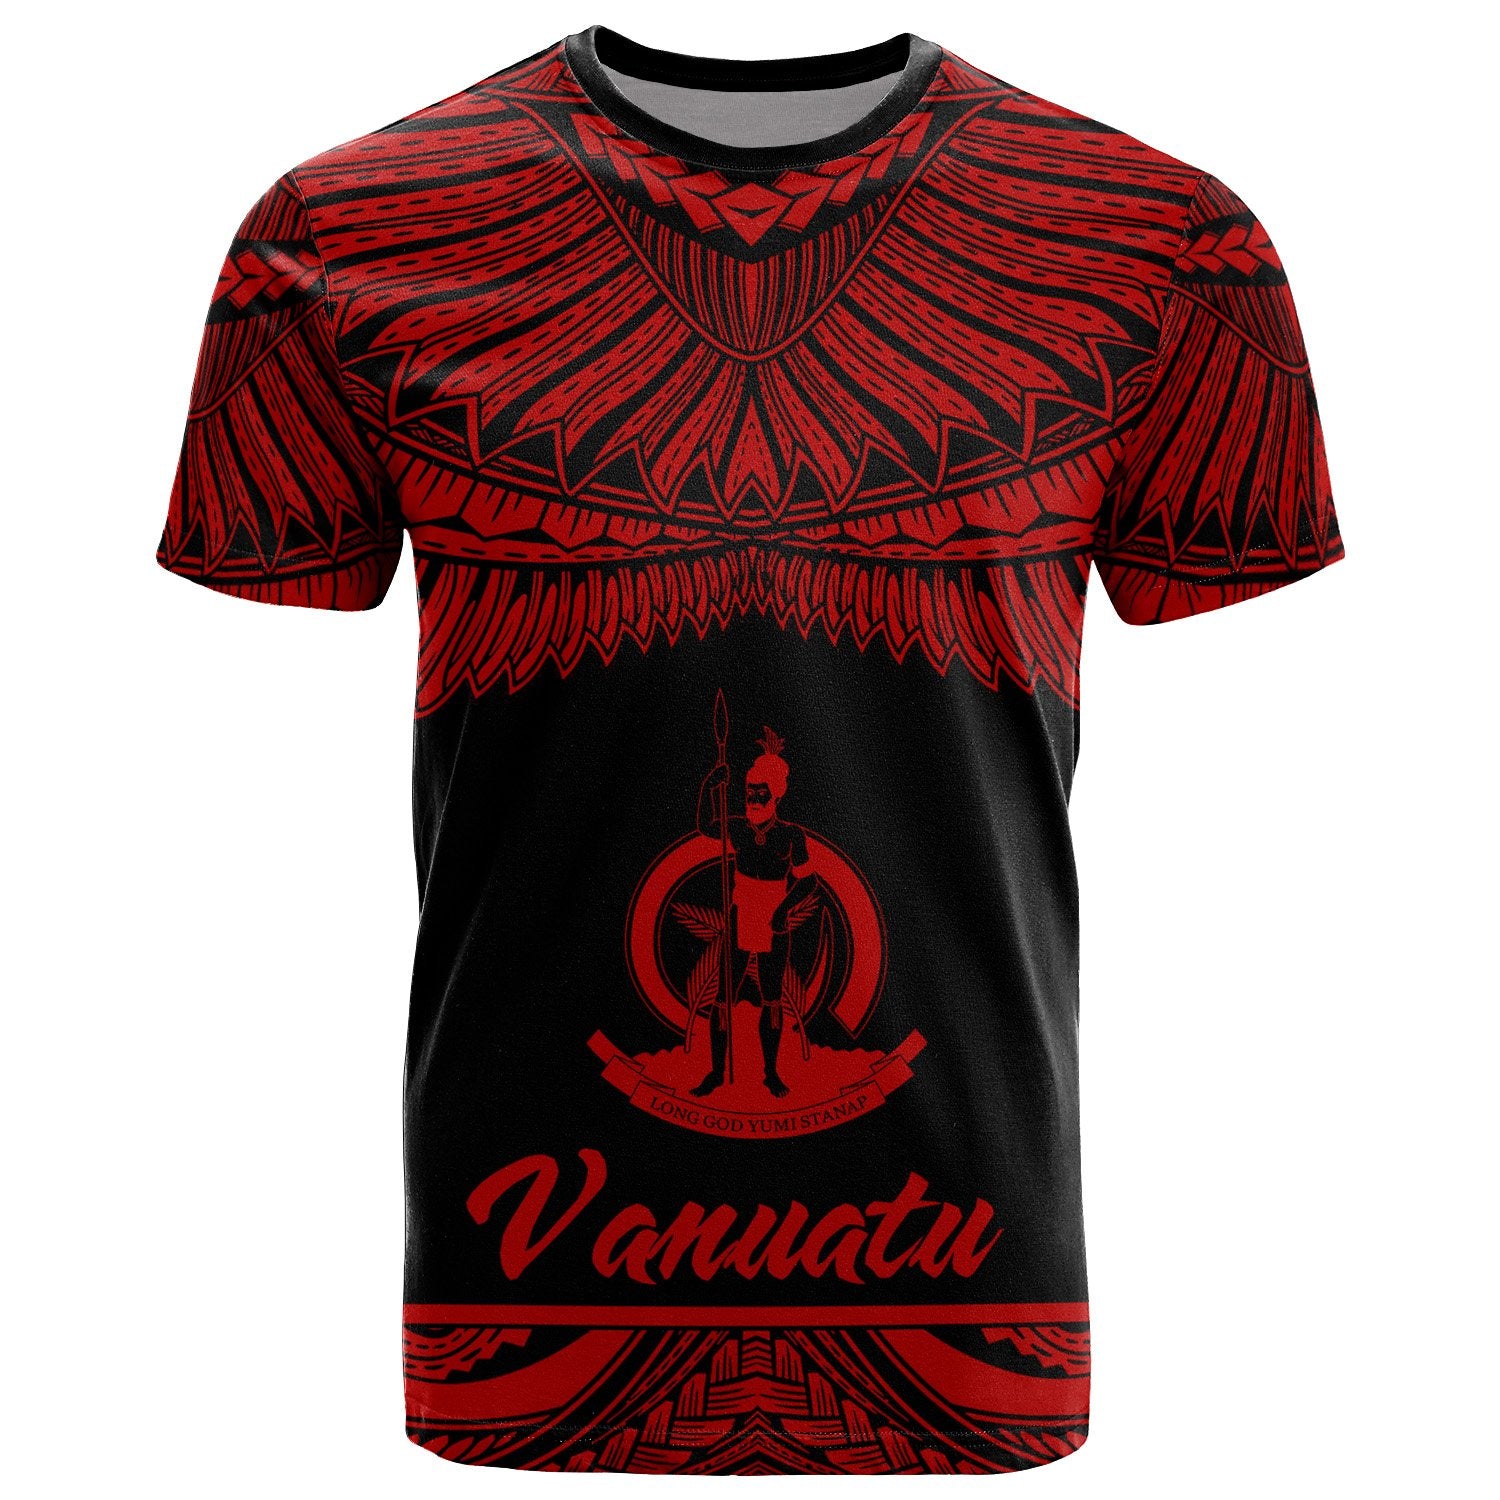 Vanuatu Polynesian T Shirt Vanuatuan Pride Red Version Unisex Red - Polynesian Pride